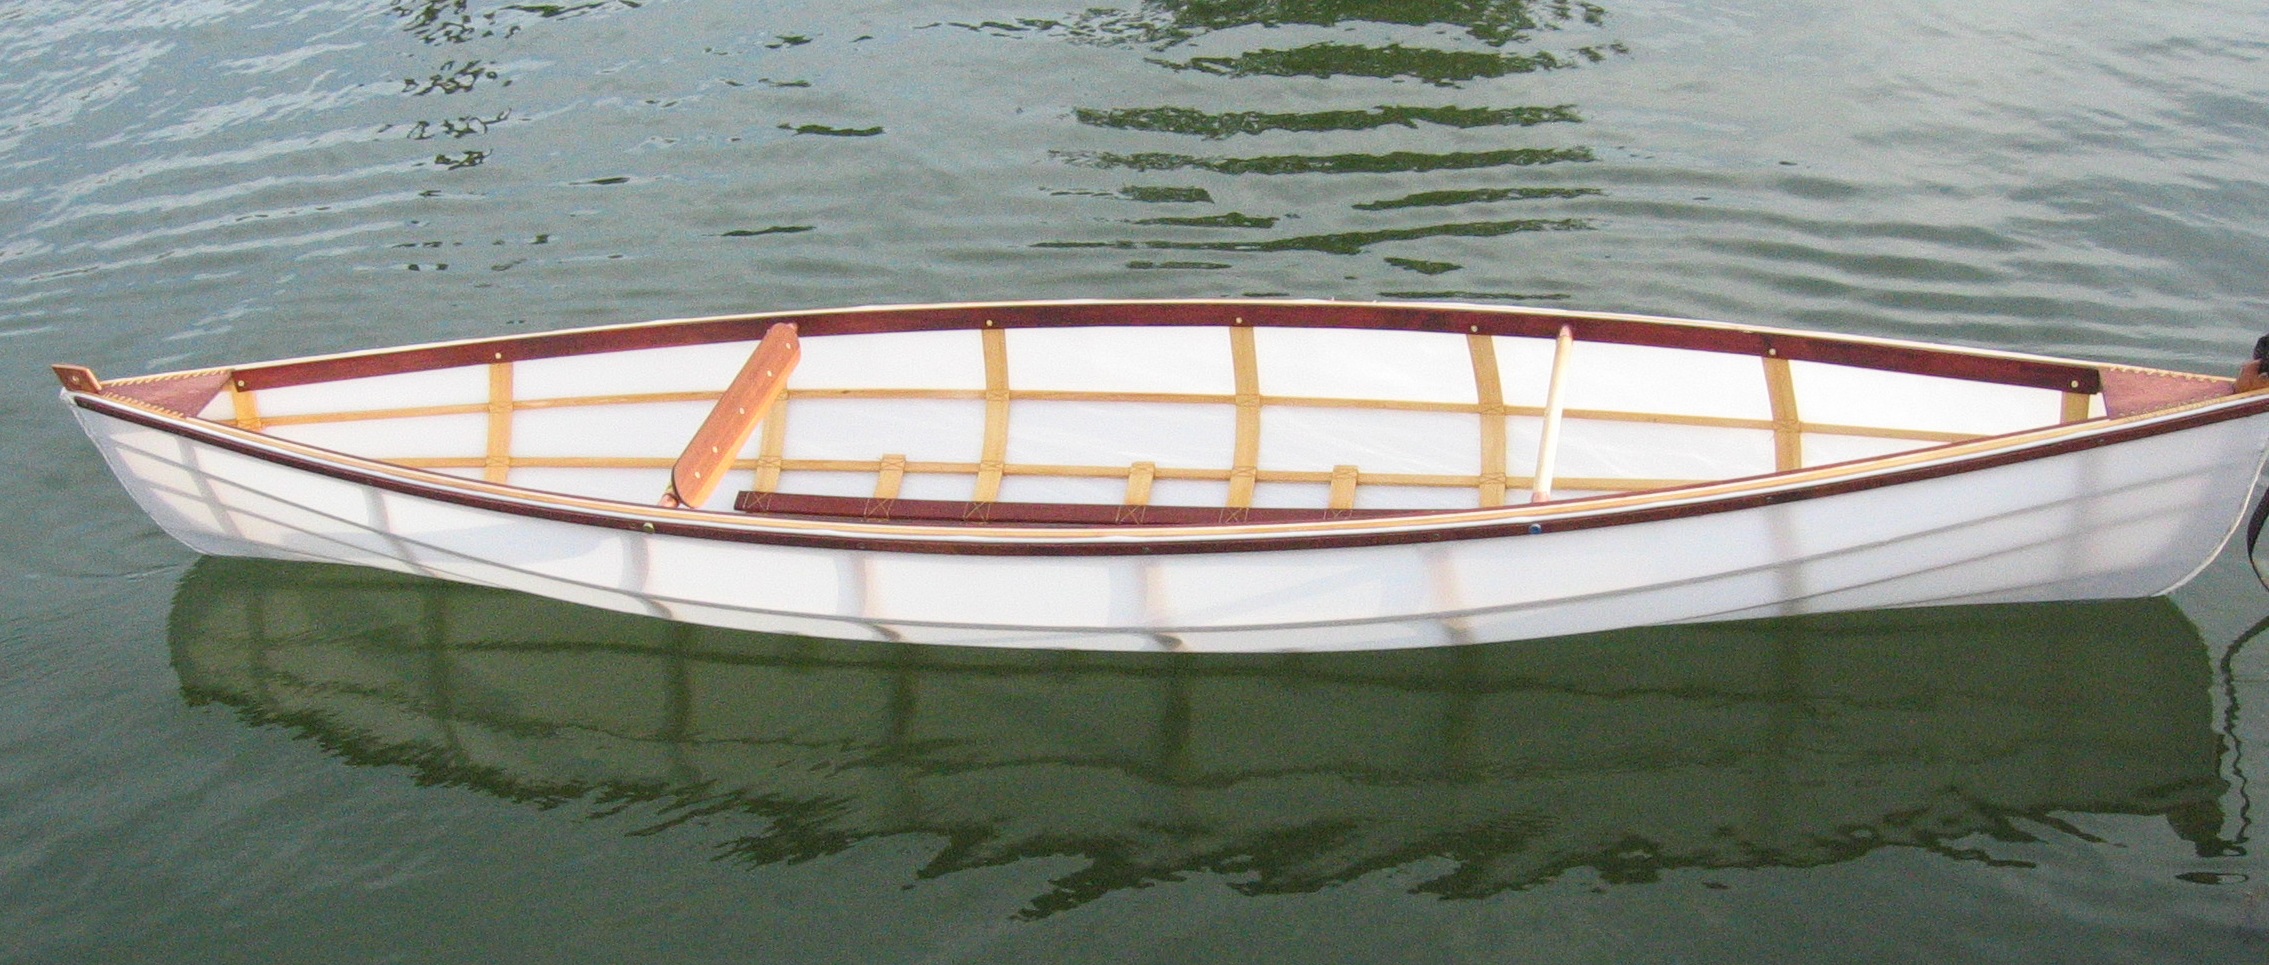 canoe kits, kayak kits, skin on frame boat kits | Dreamcatcher Boats 